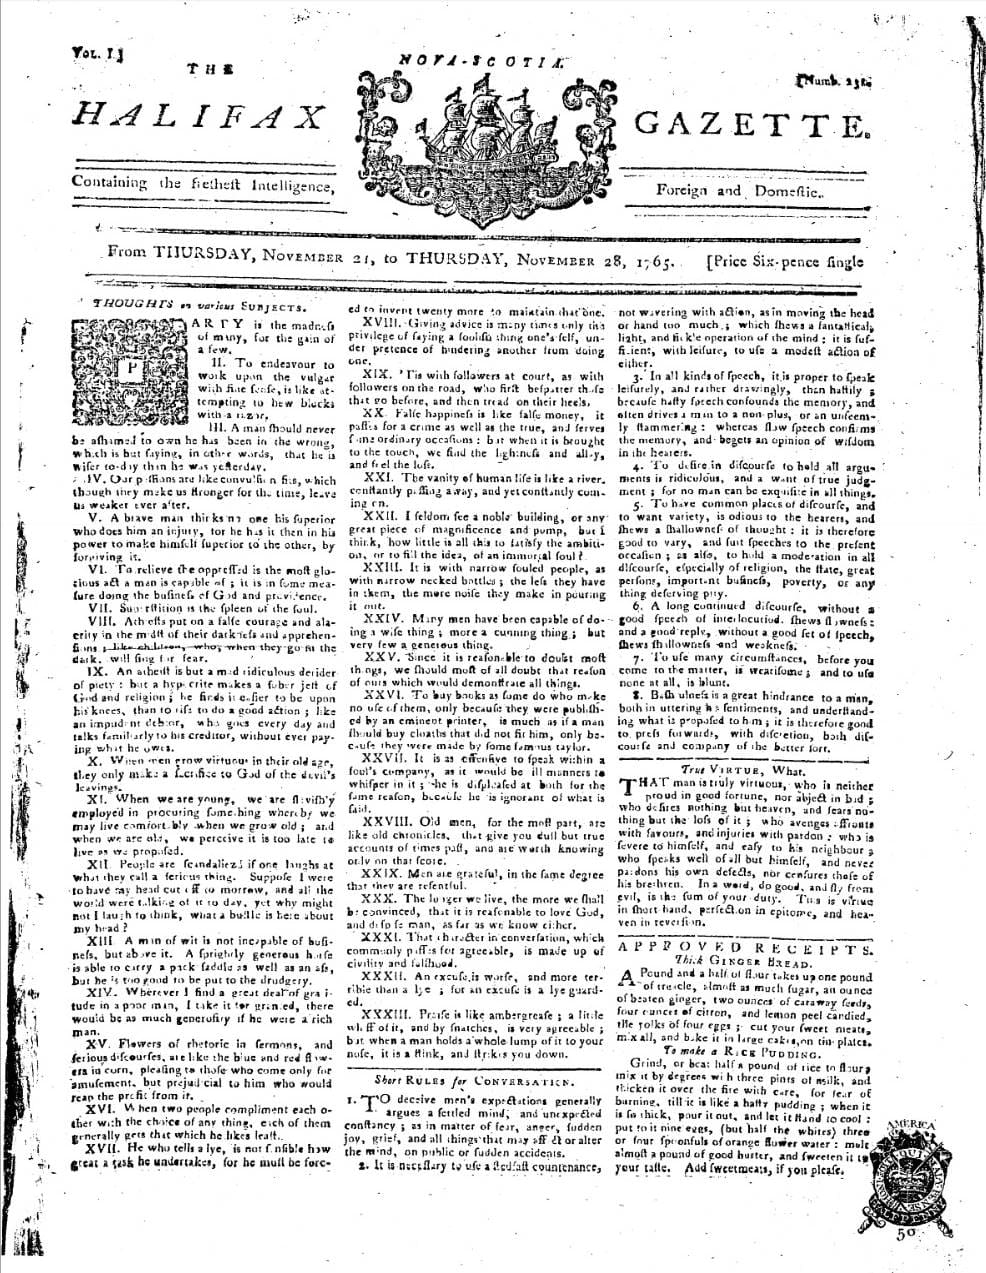 Nova Scotia Gazette, Nov 21 1765.